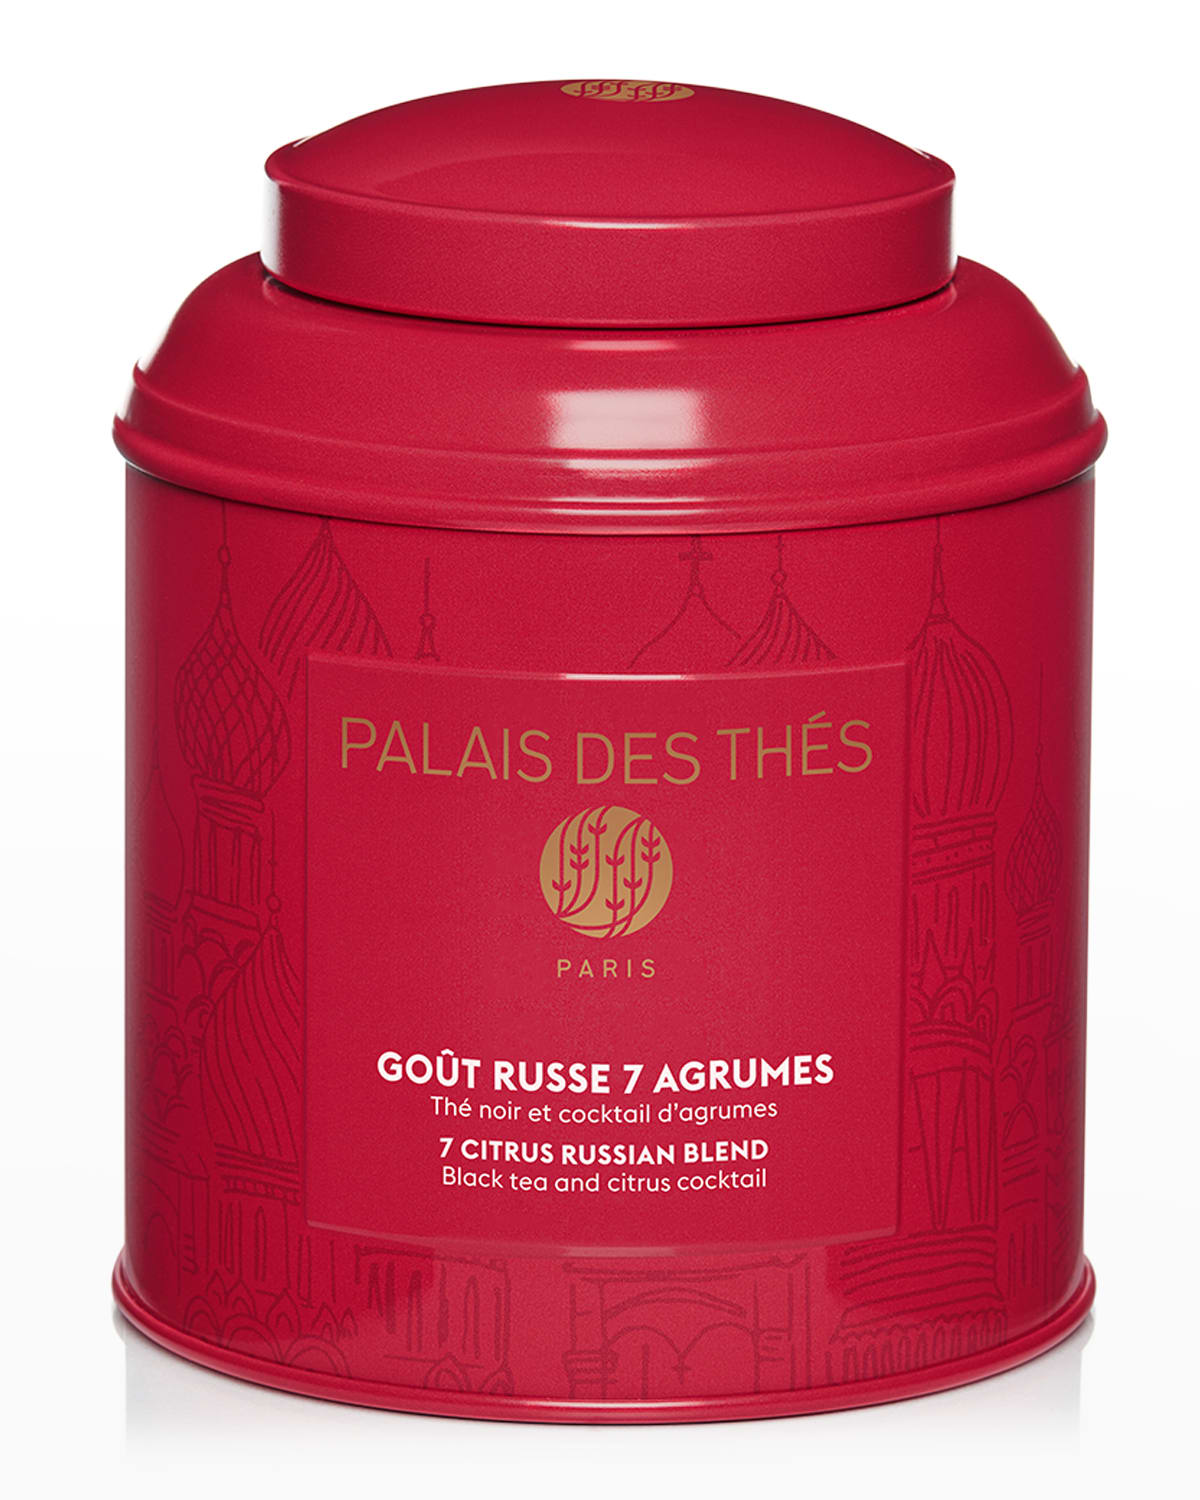 Palais des Thes Les Sources By the Sea, Escape Organic Sensorial Herbal  Tea, 4.9 oz.